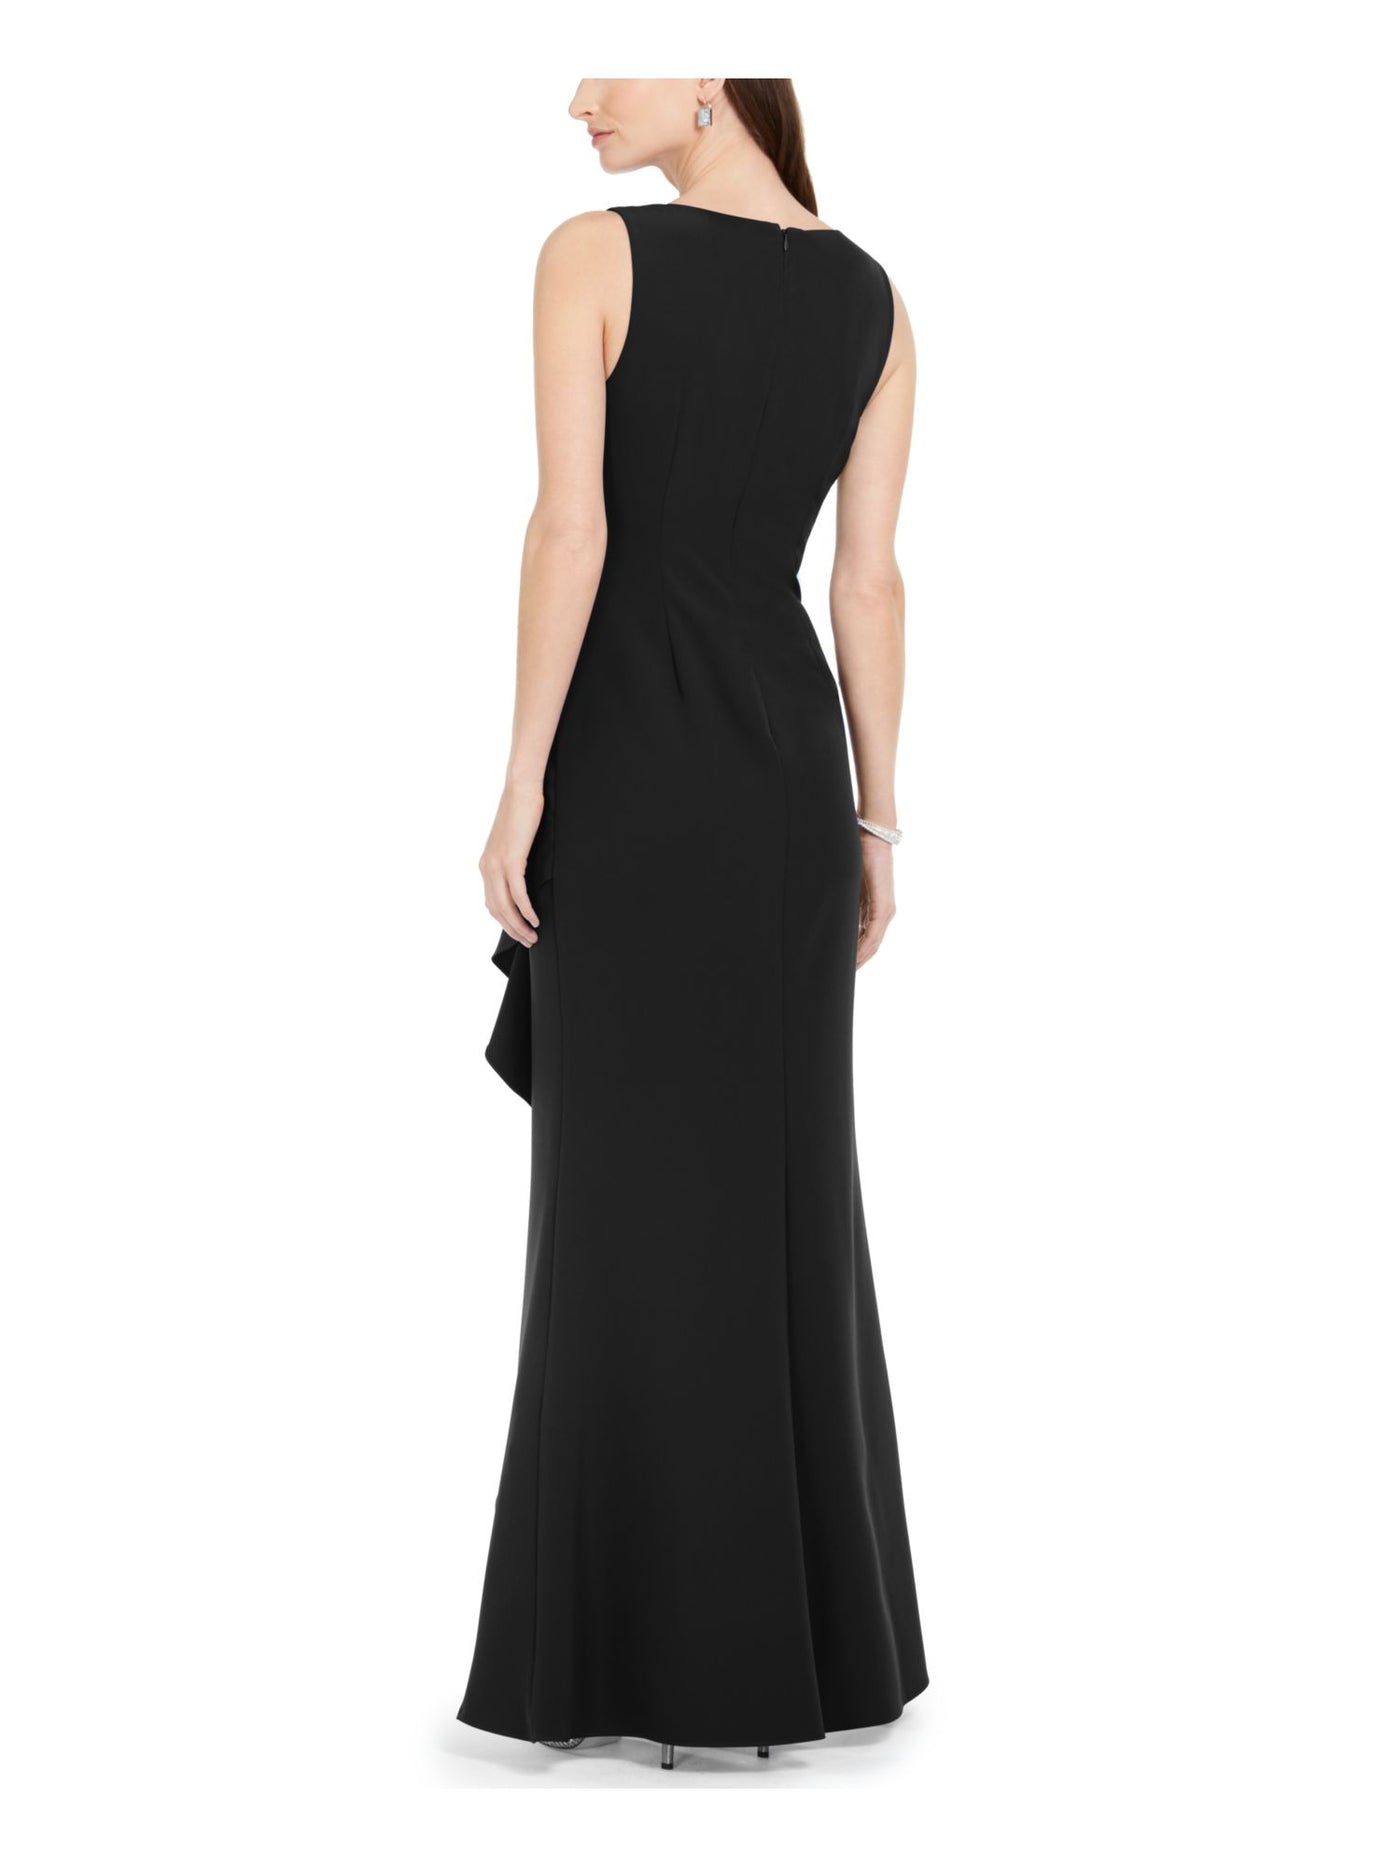 ADRIANNA PAPELL Womens Black Slitted Sleeveless V Neck Full-Length Formal Sheath Dress 0